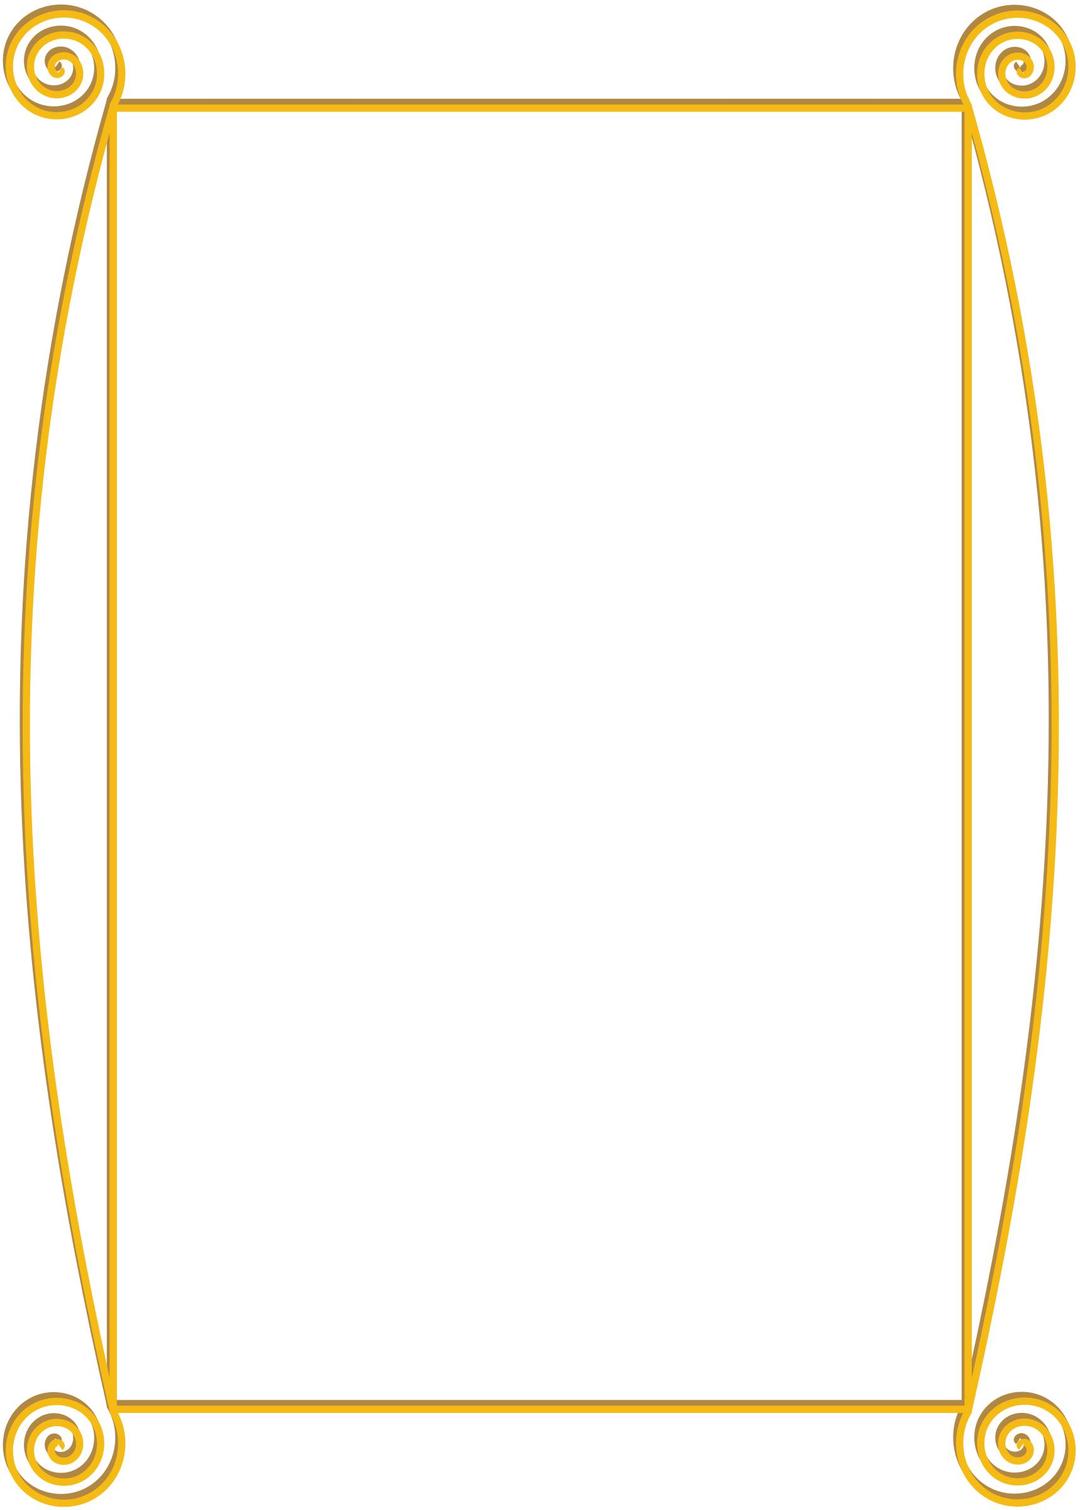 Golden spiral frame png transparent